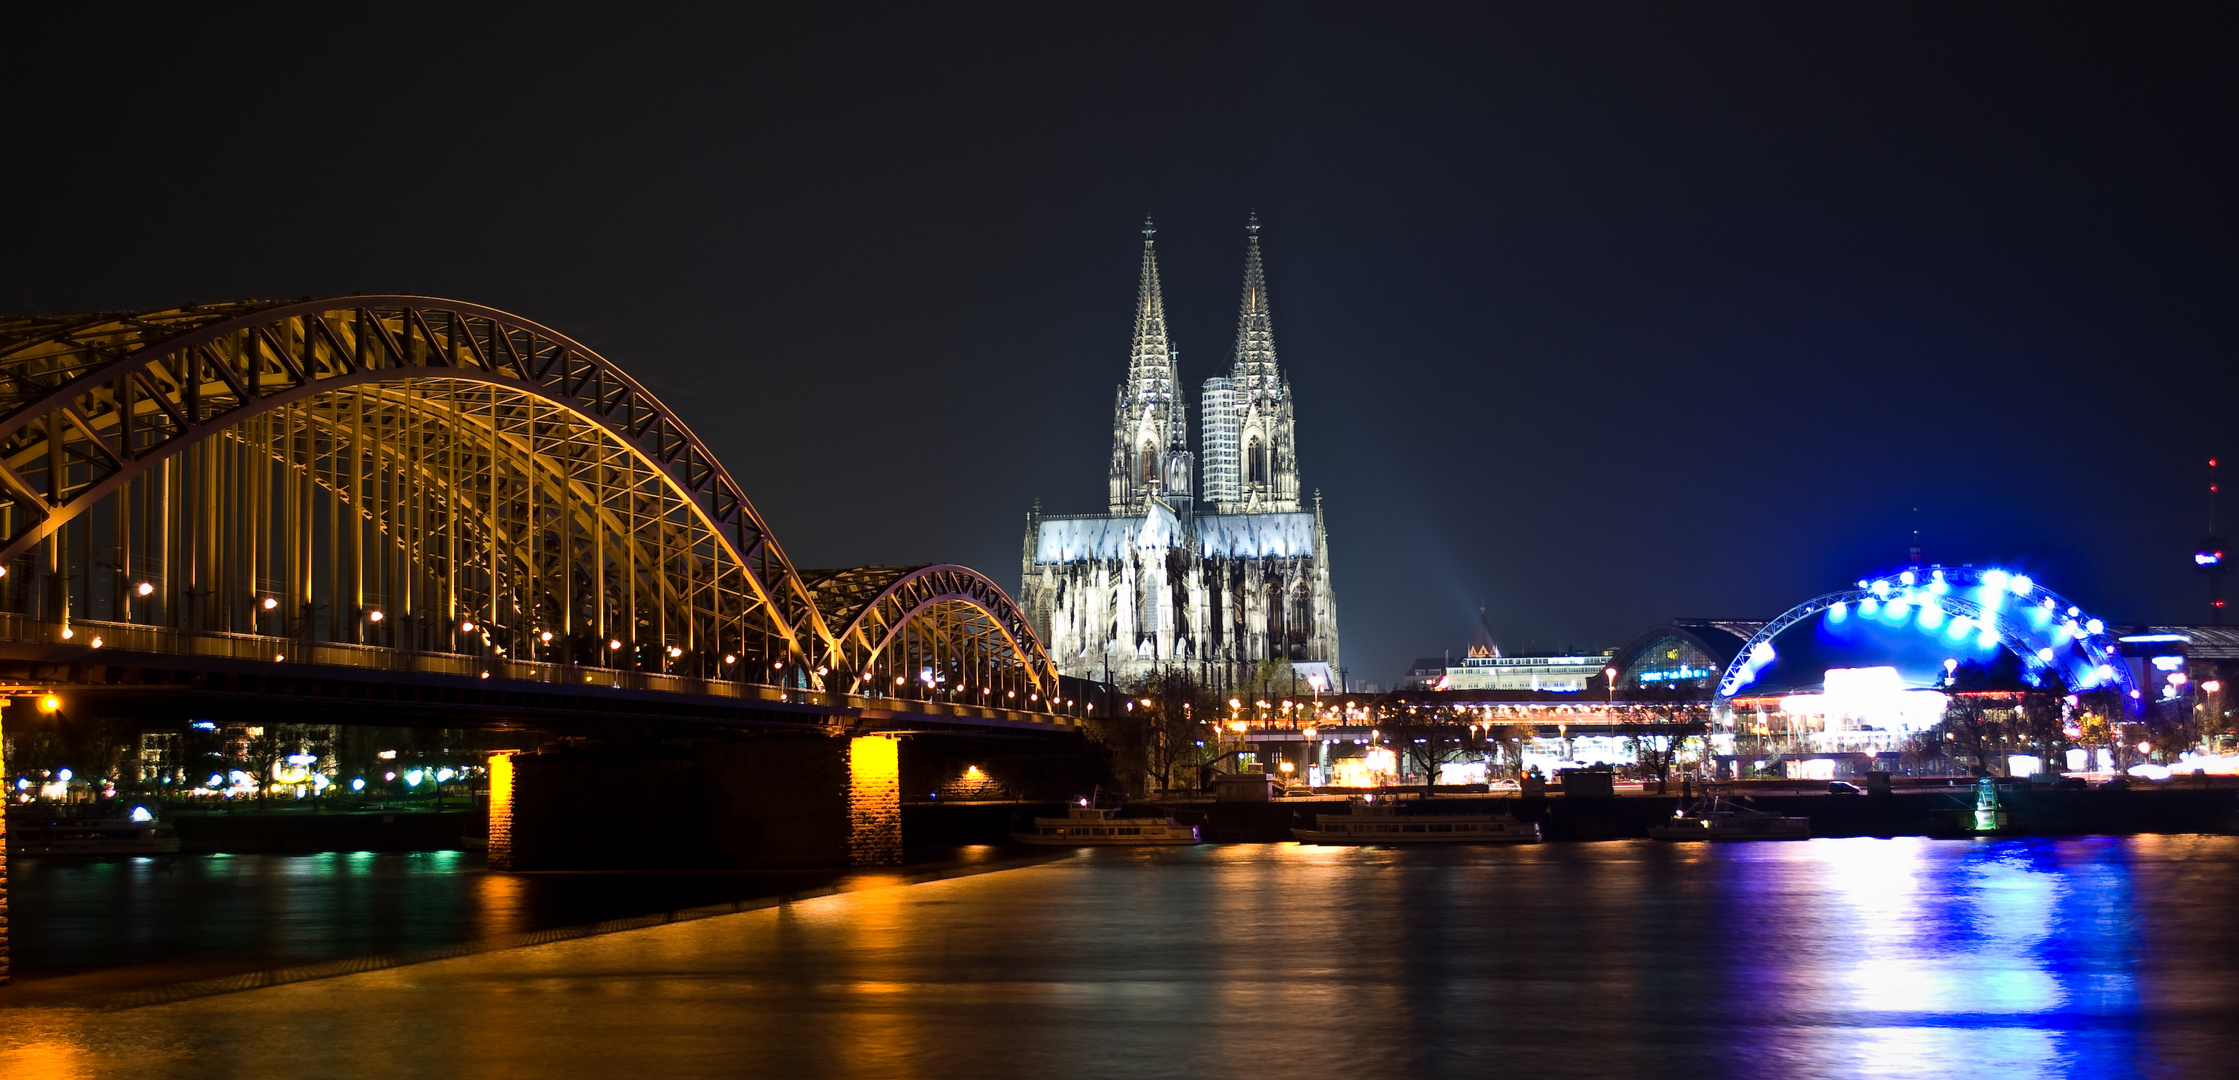 Night at Cologne